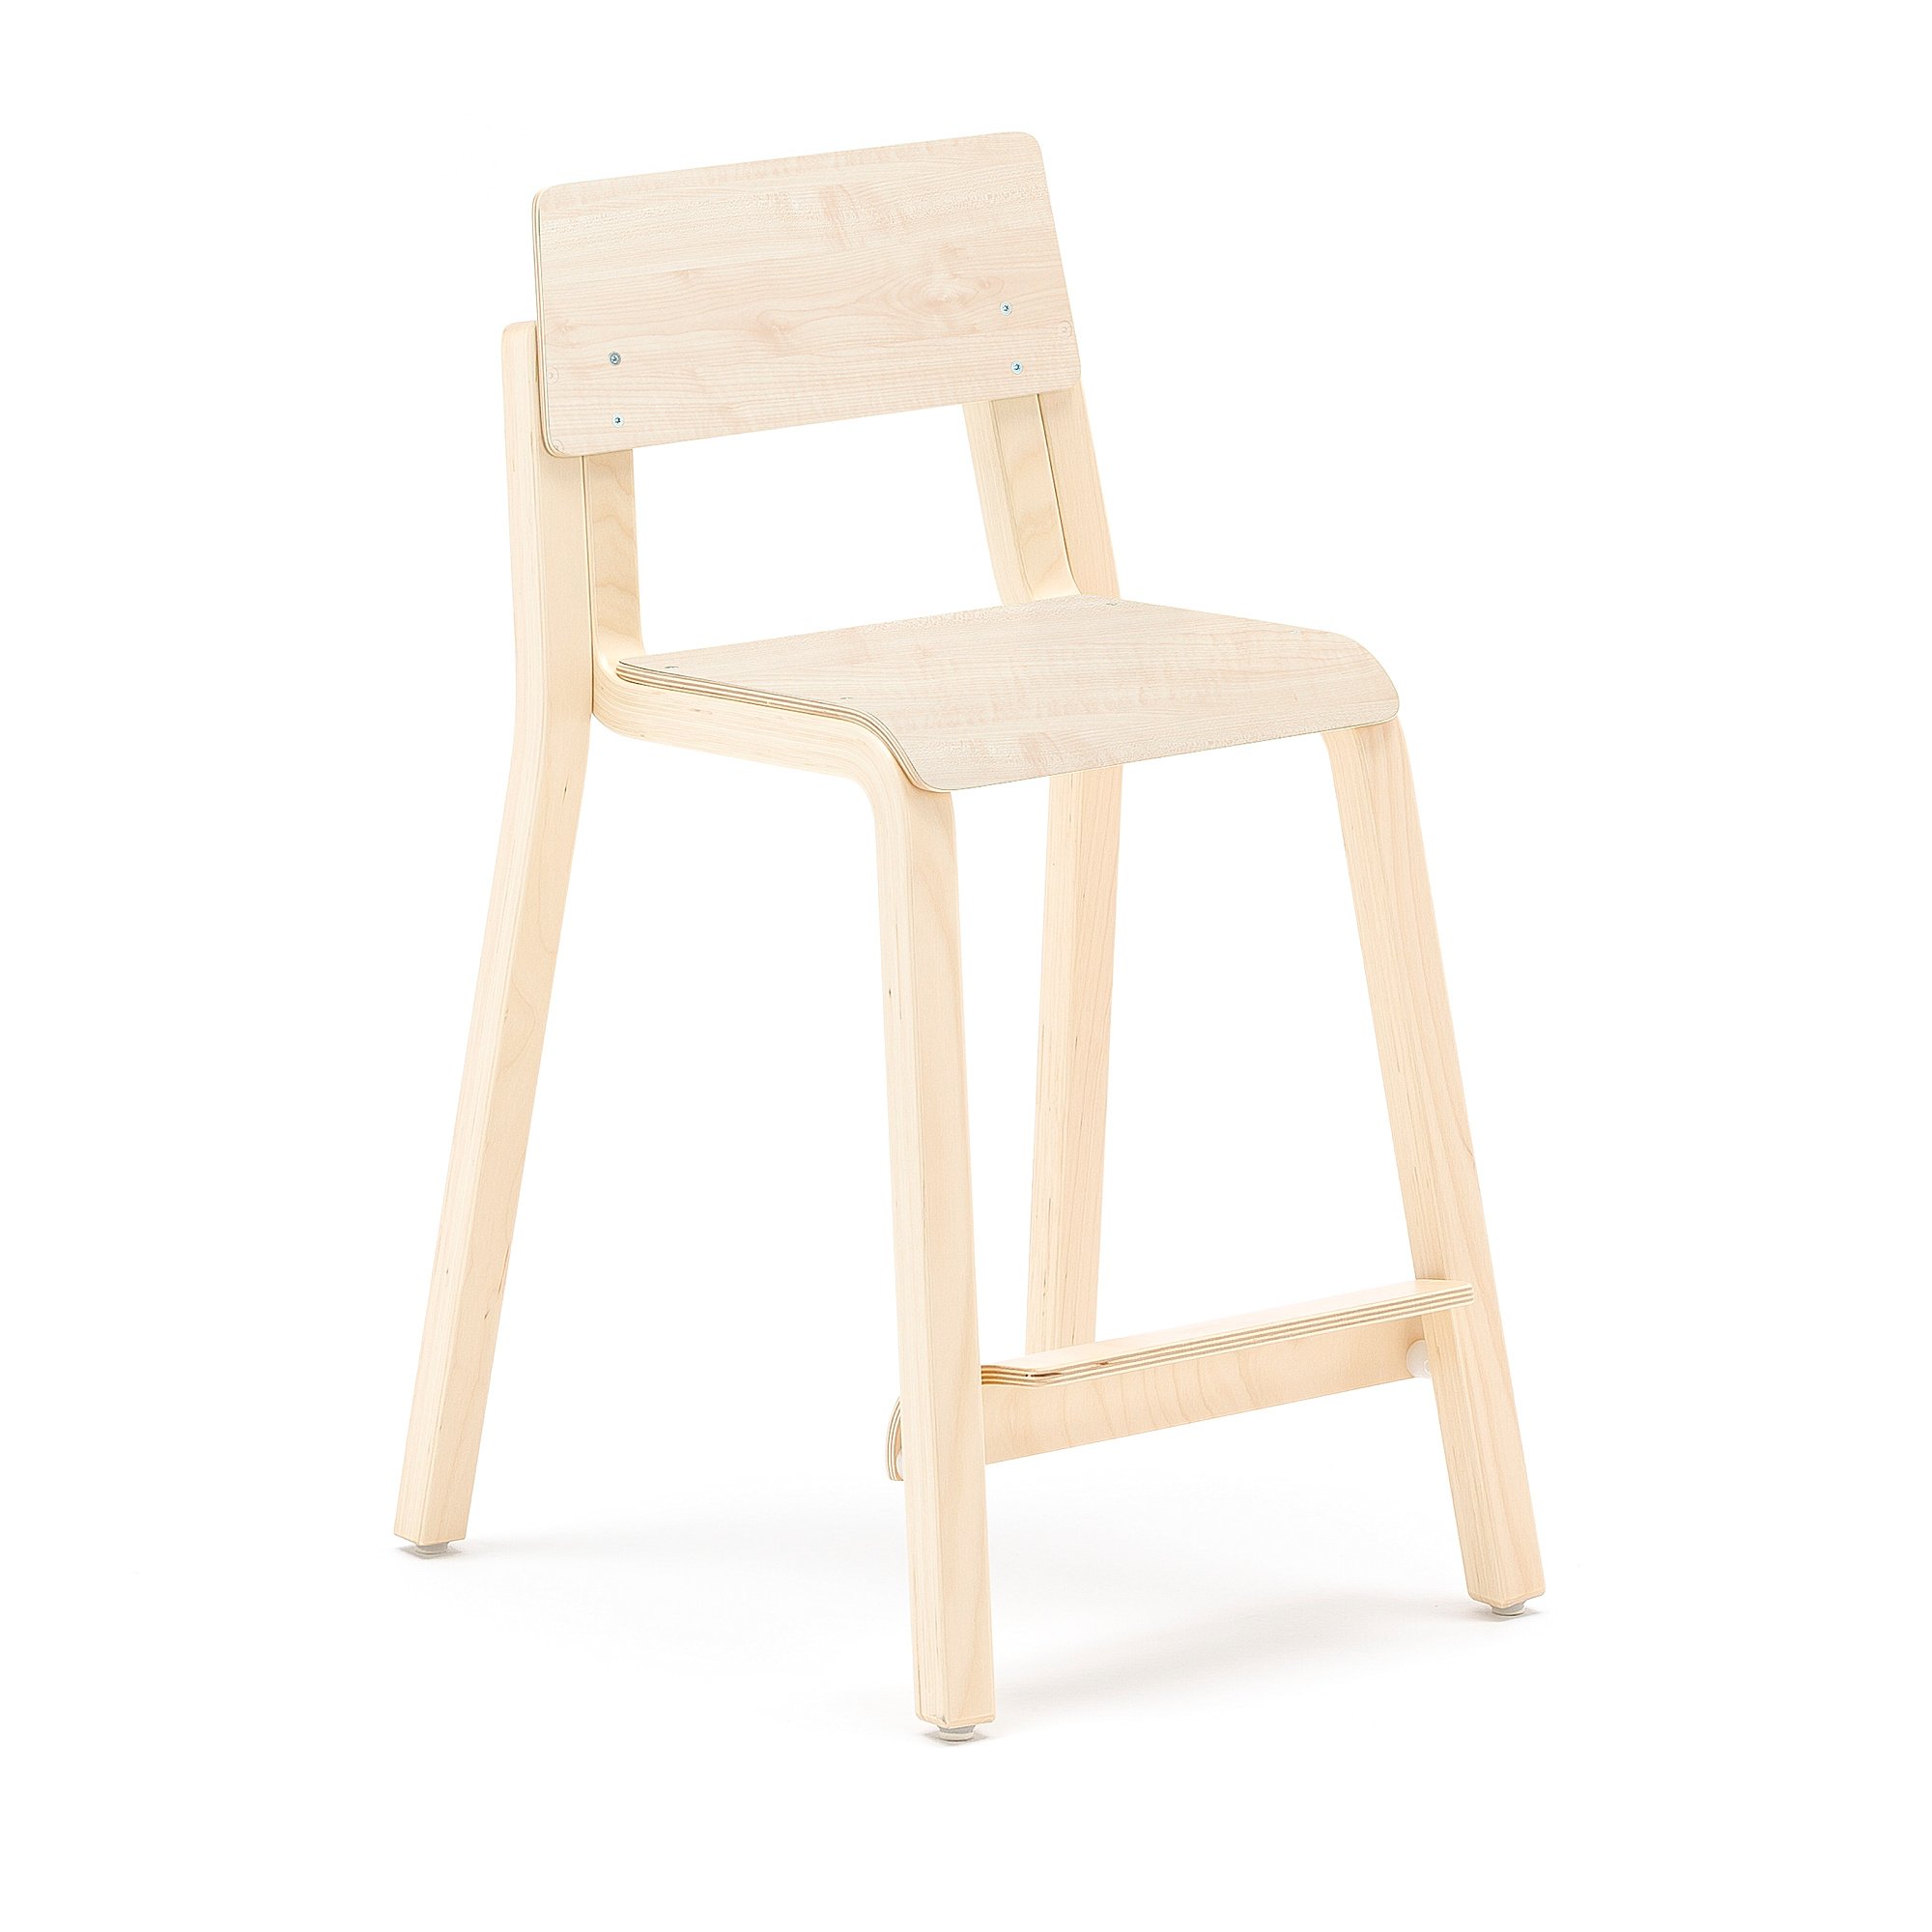 Vysoká dětská židle DANTE, výška 500 mm, bříza